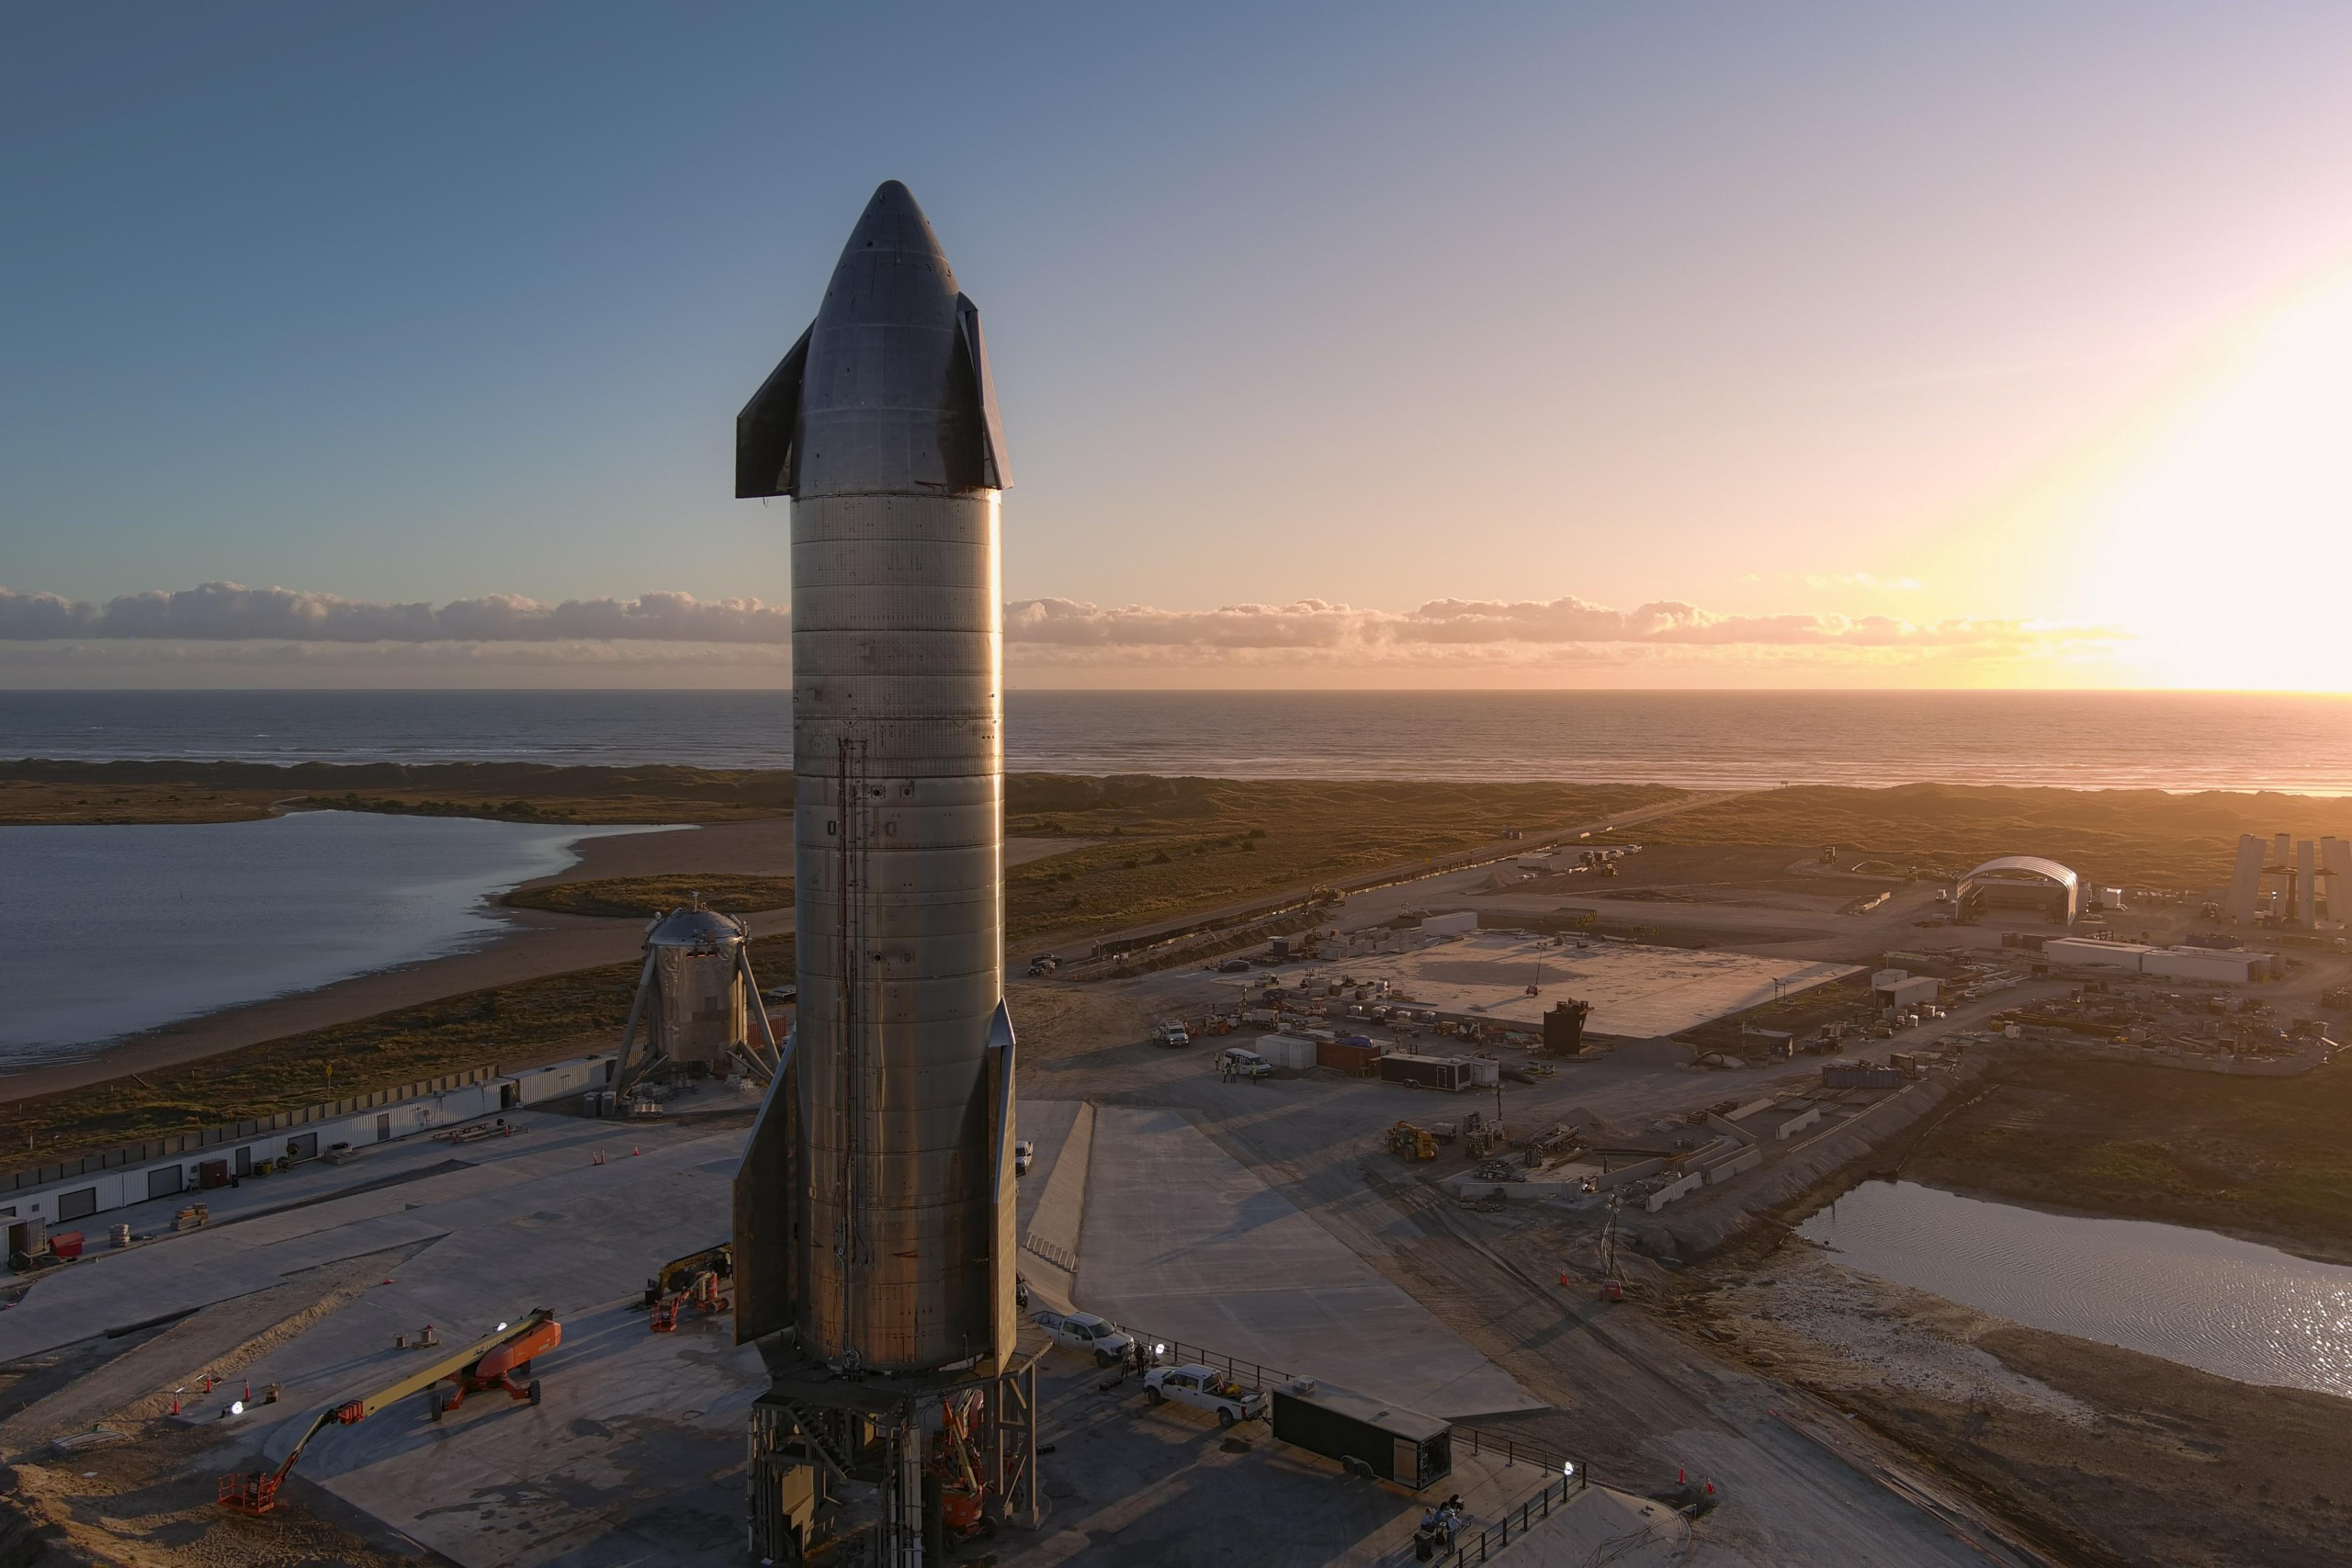 Starship & Super Heavy в масштабе 1:110 — энтузиасты собрали точную модель ракетной системы SpaceX из 3185 деталей LEGO